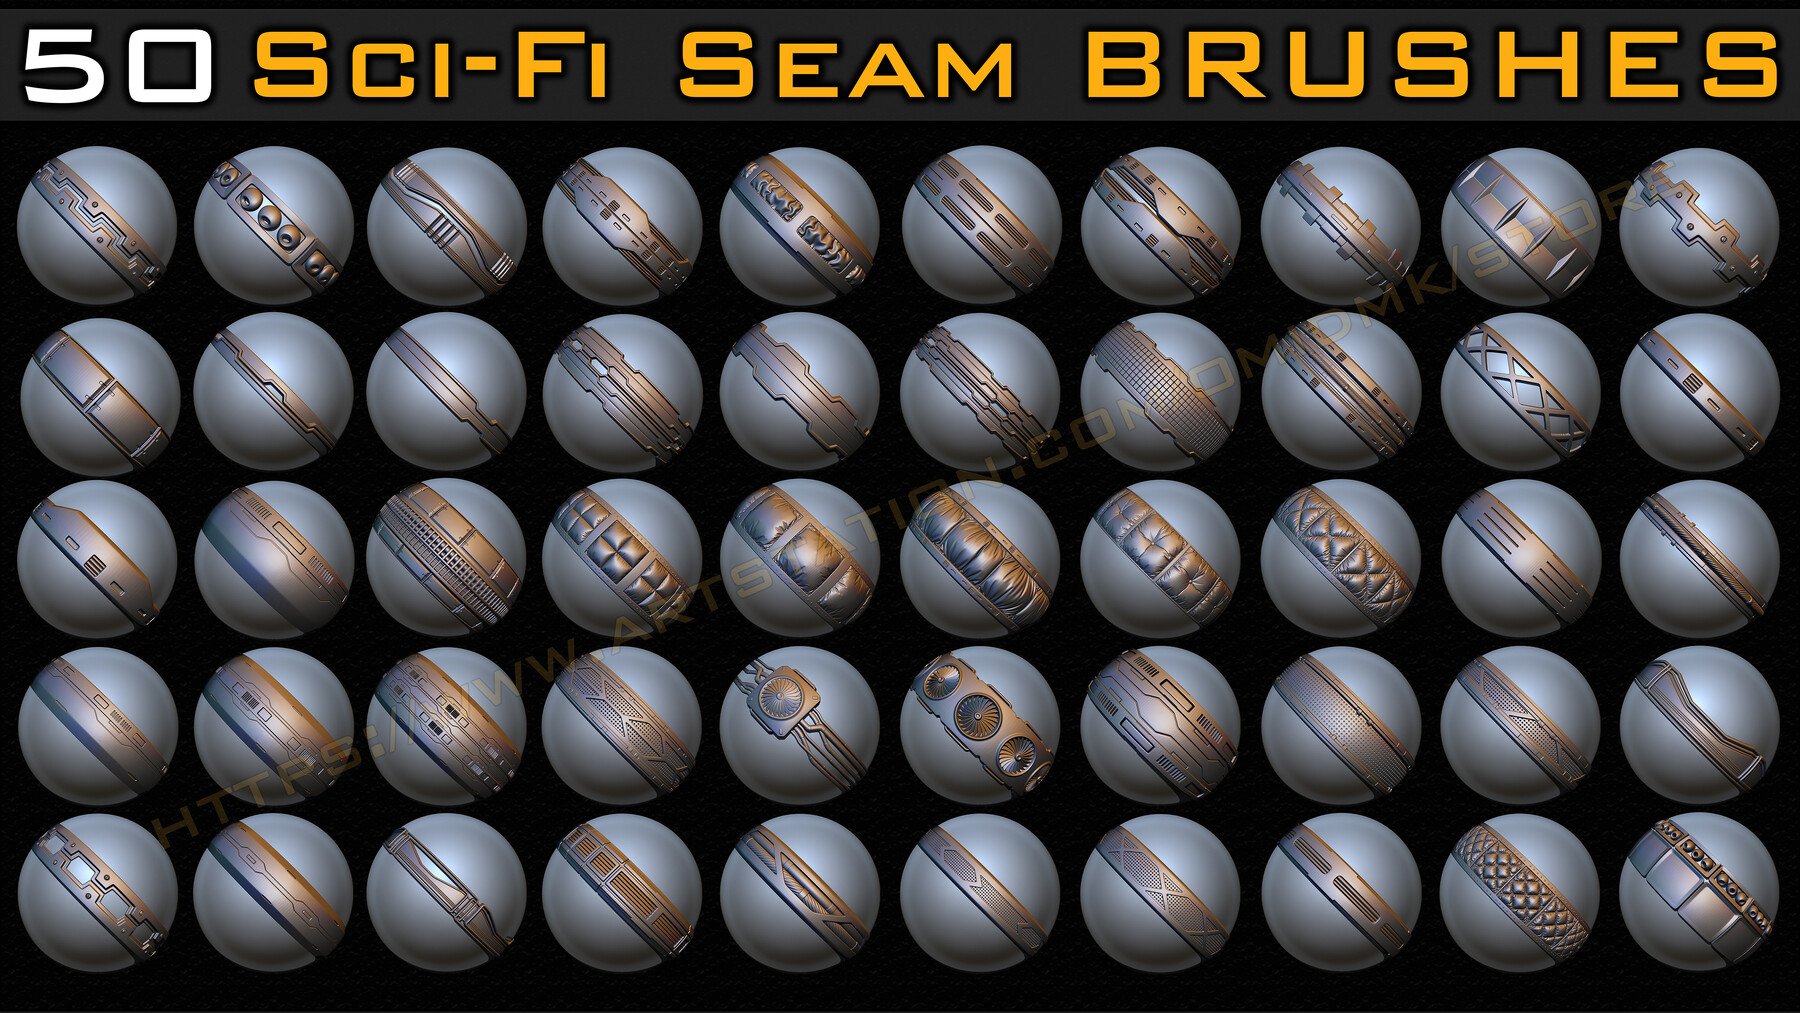 50 Sci-fi Seam Brushes + Alpha Vol.03